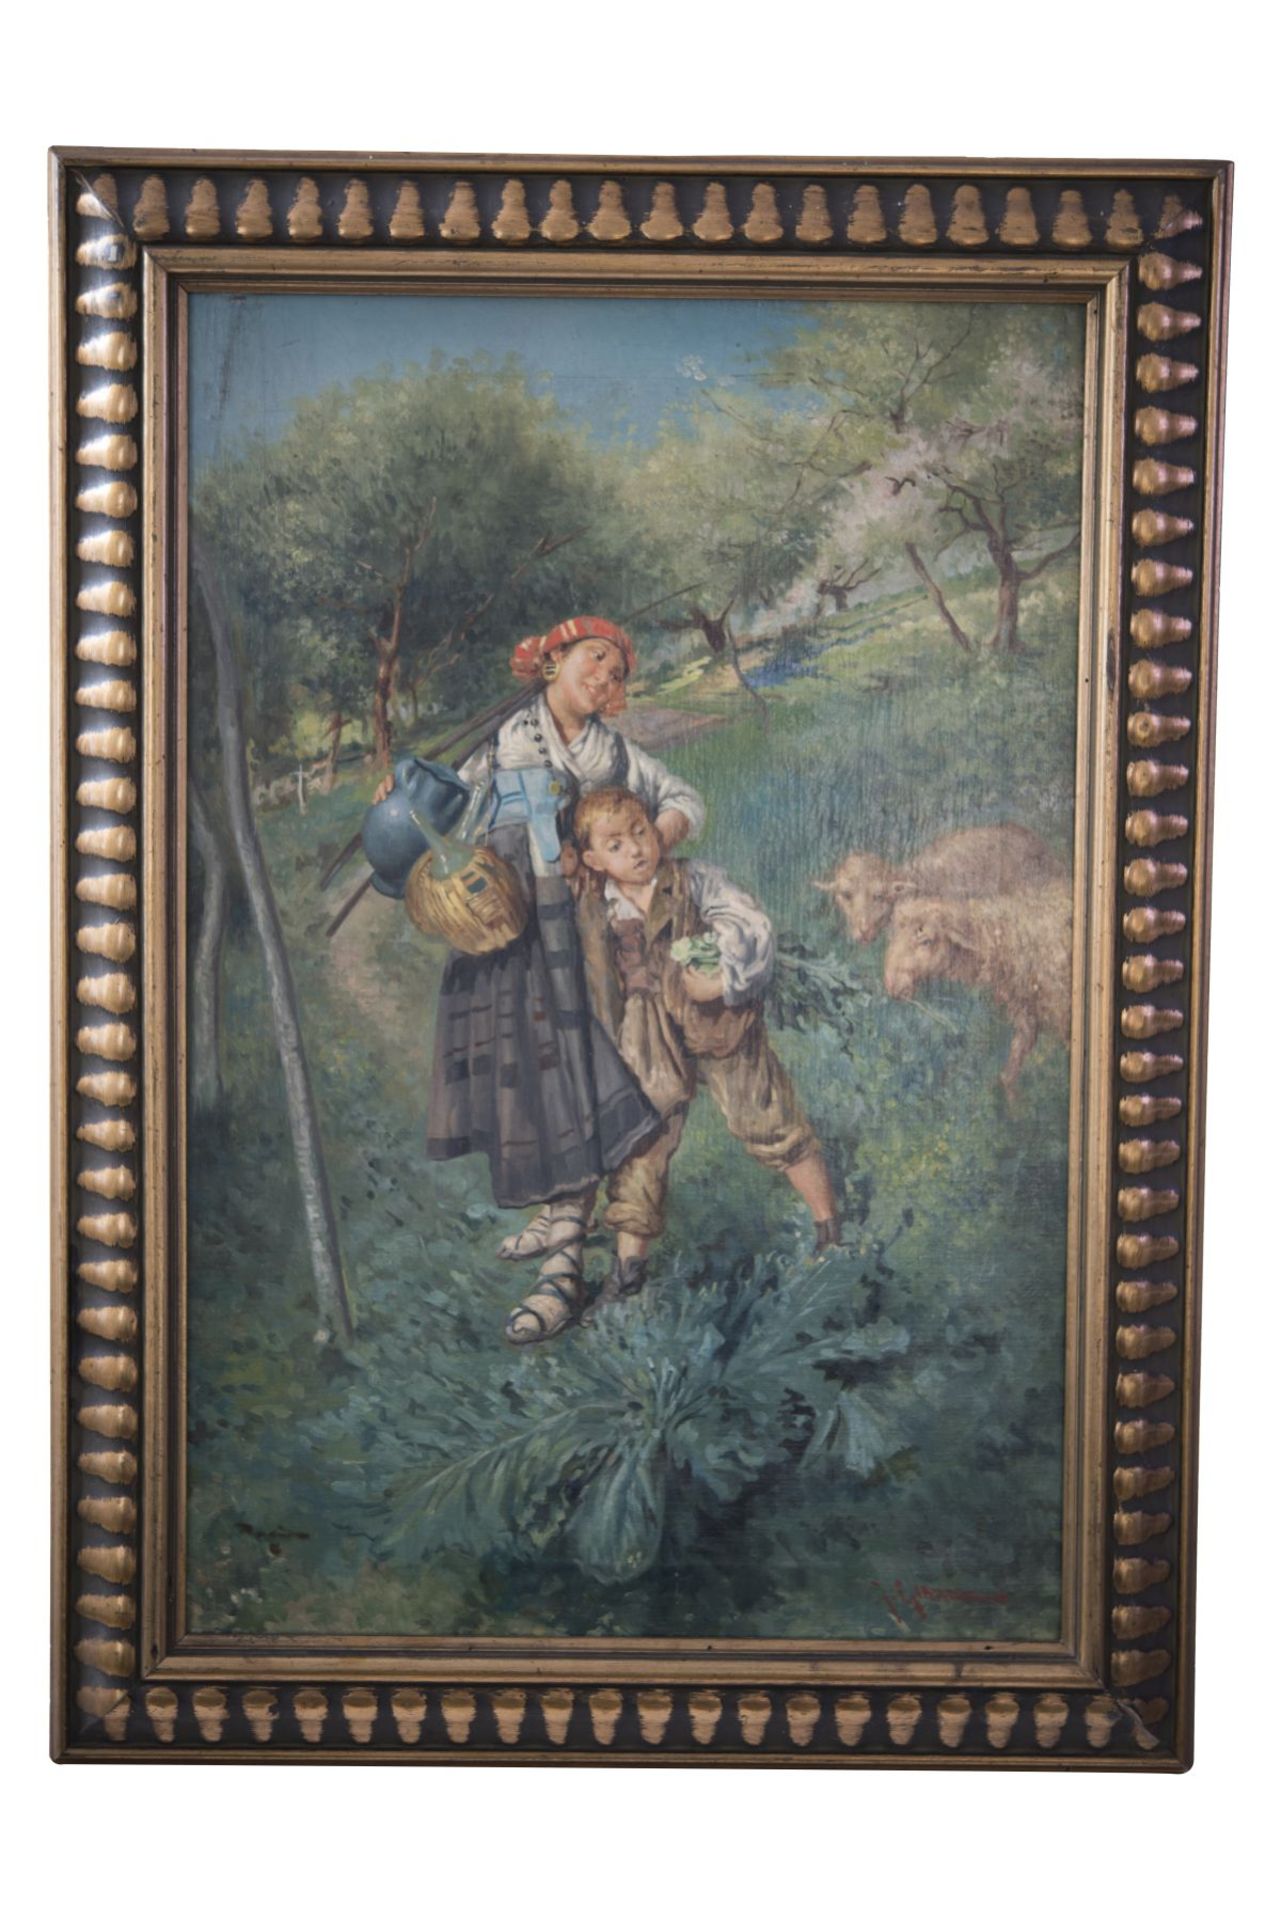 Giuseppe Giaradiello (1877-1920), Italy "Shepherdess with Child"